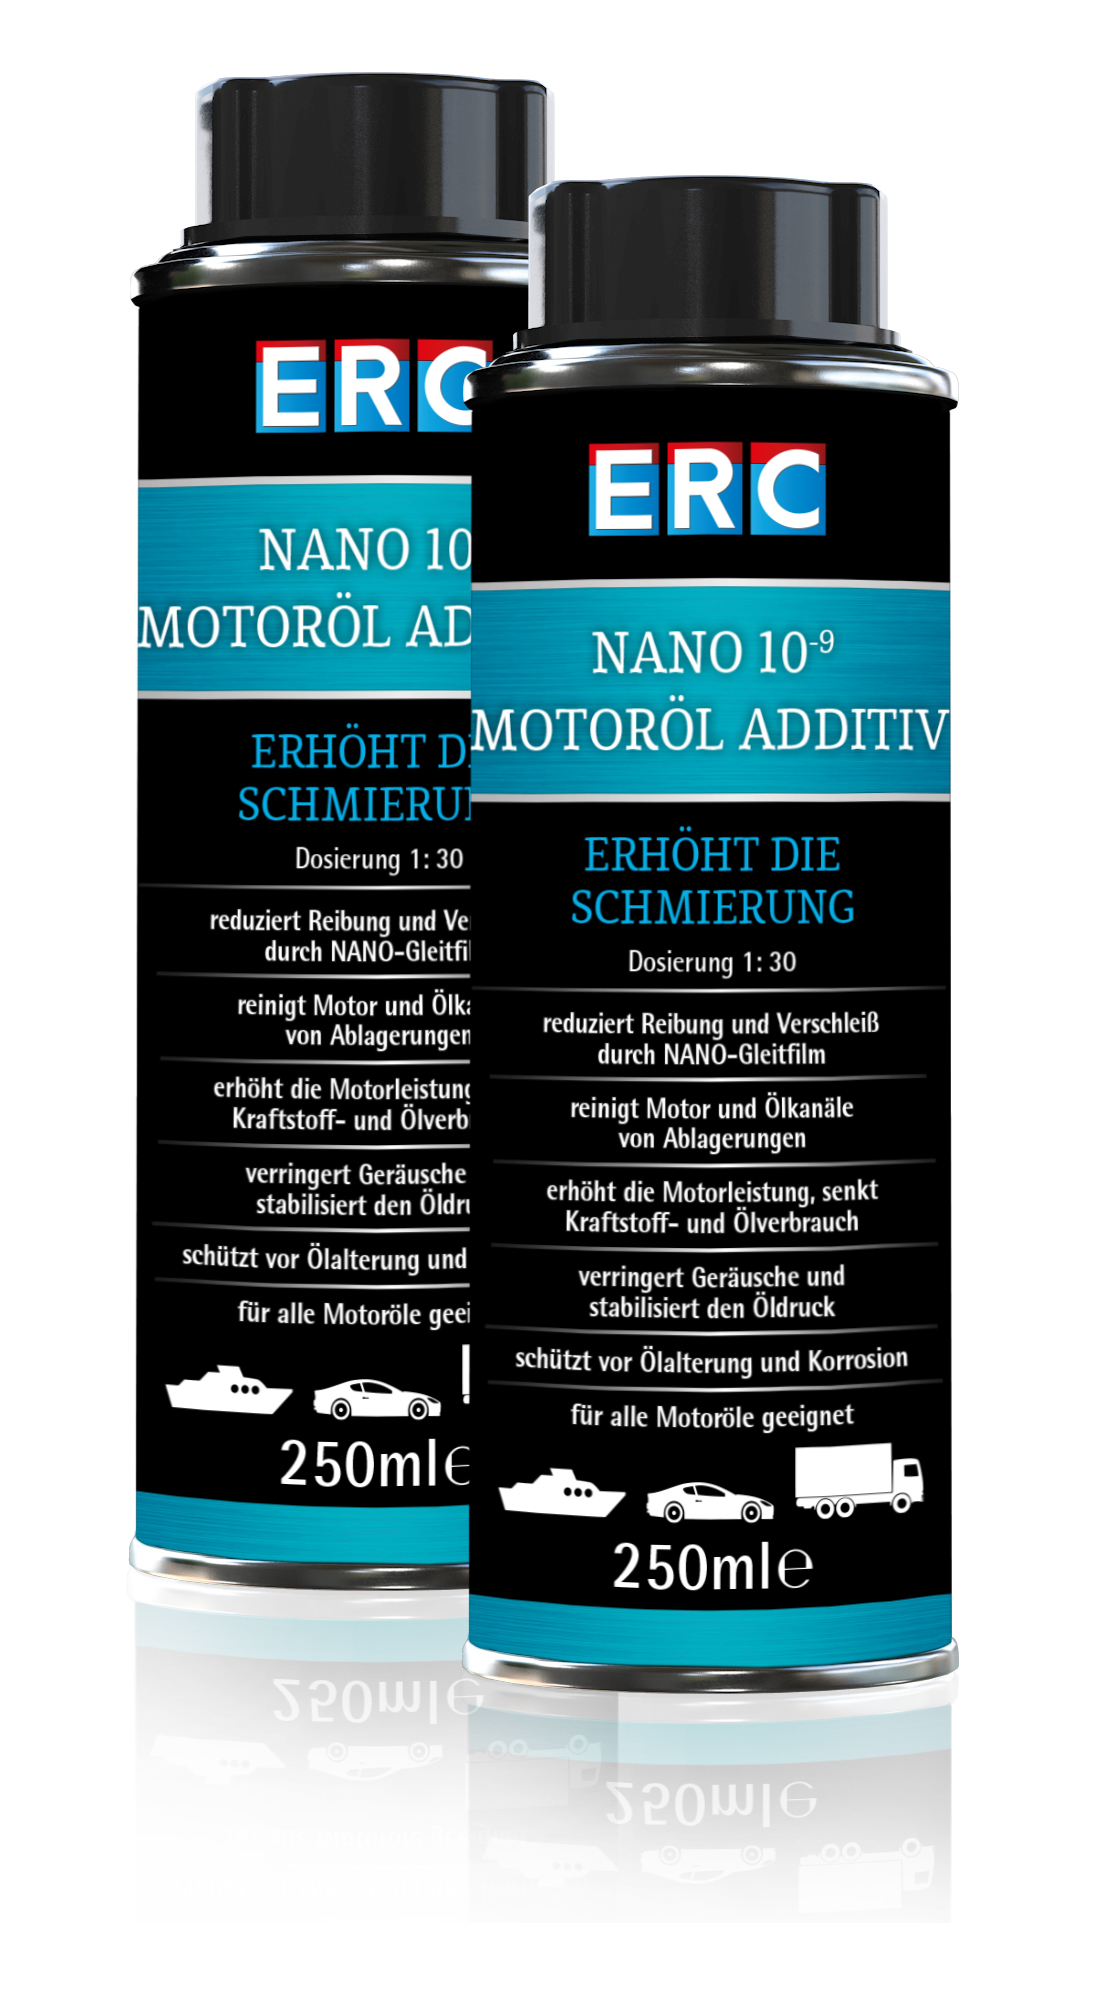 2 x 250 ml ERC NANO 10-9 Motoröl Additiv Motorbeschichtung Ölzusatz Versiegelung